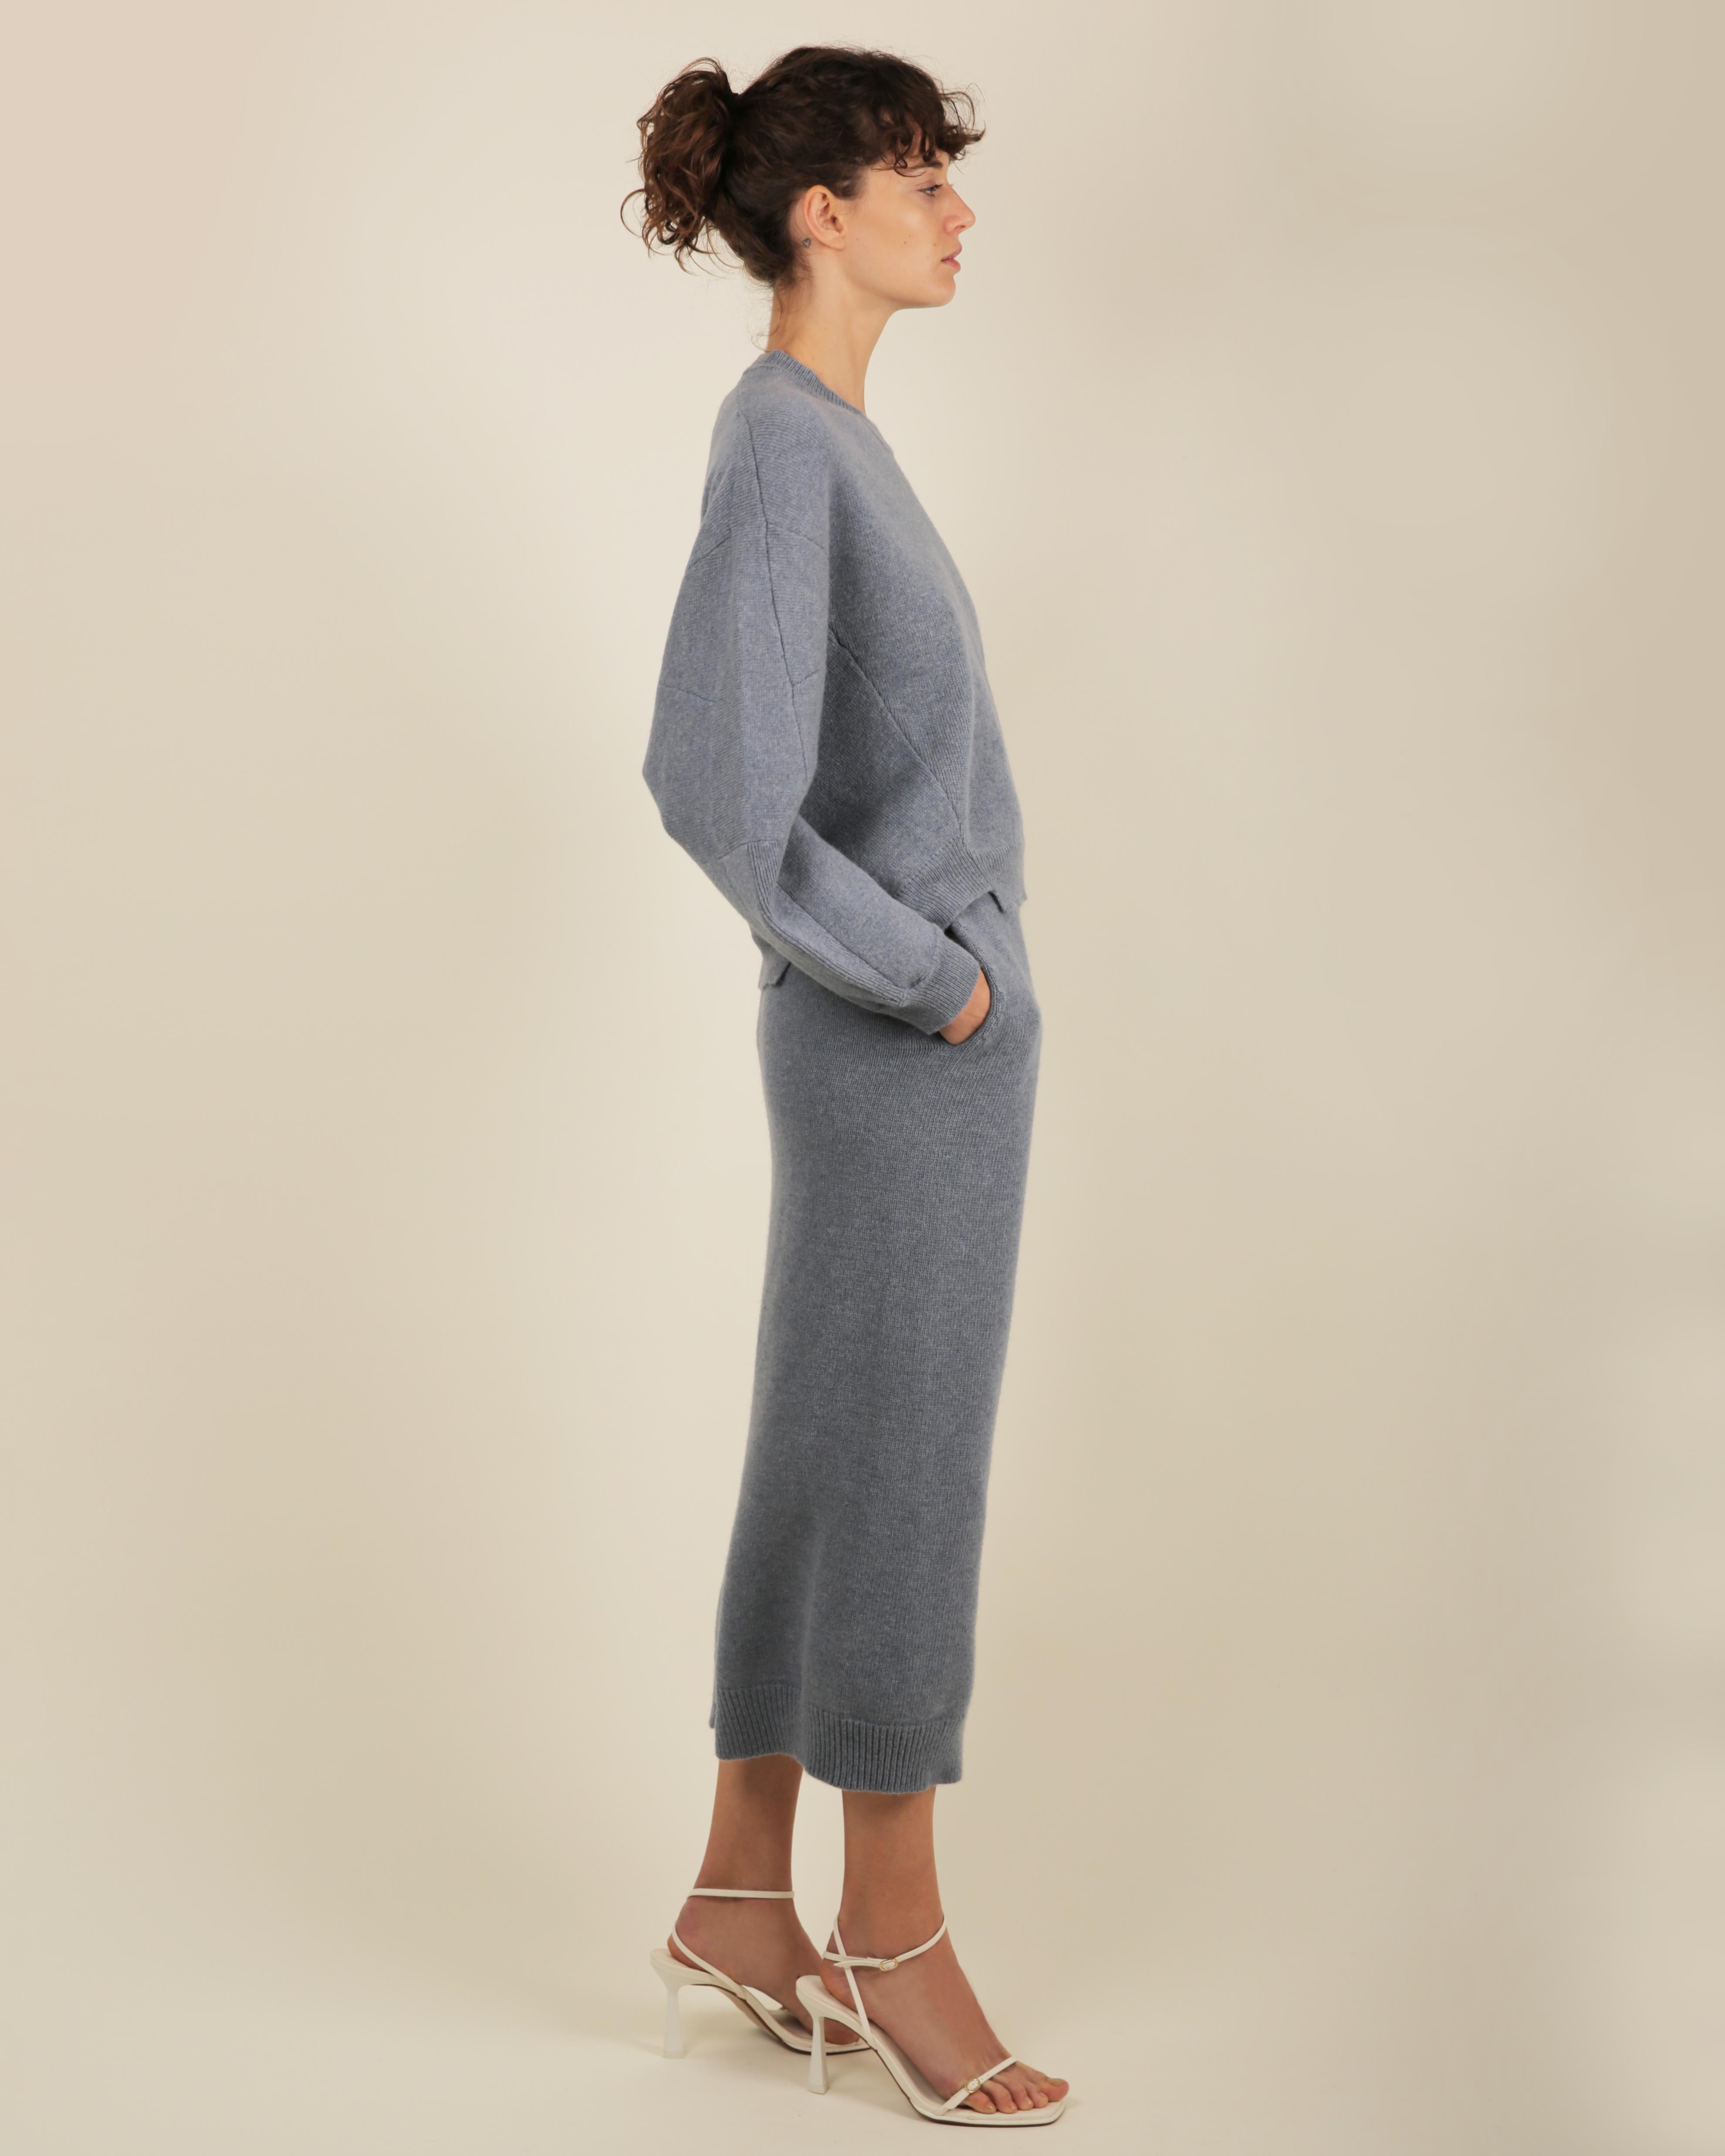 Stella McCartney Fall18 blue oversized wool alpaca matching sweater dress pants For Sale 8